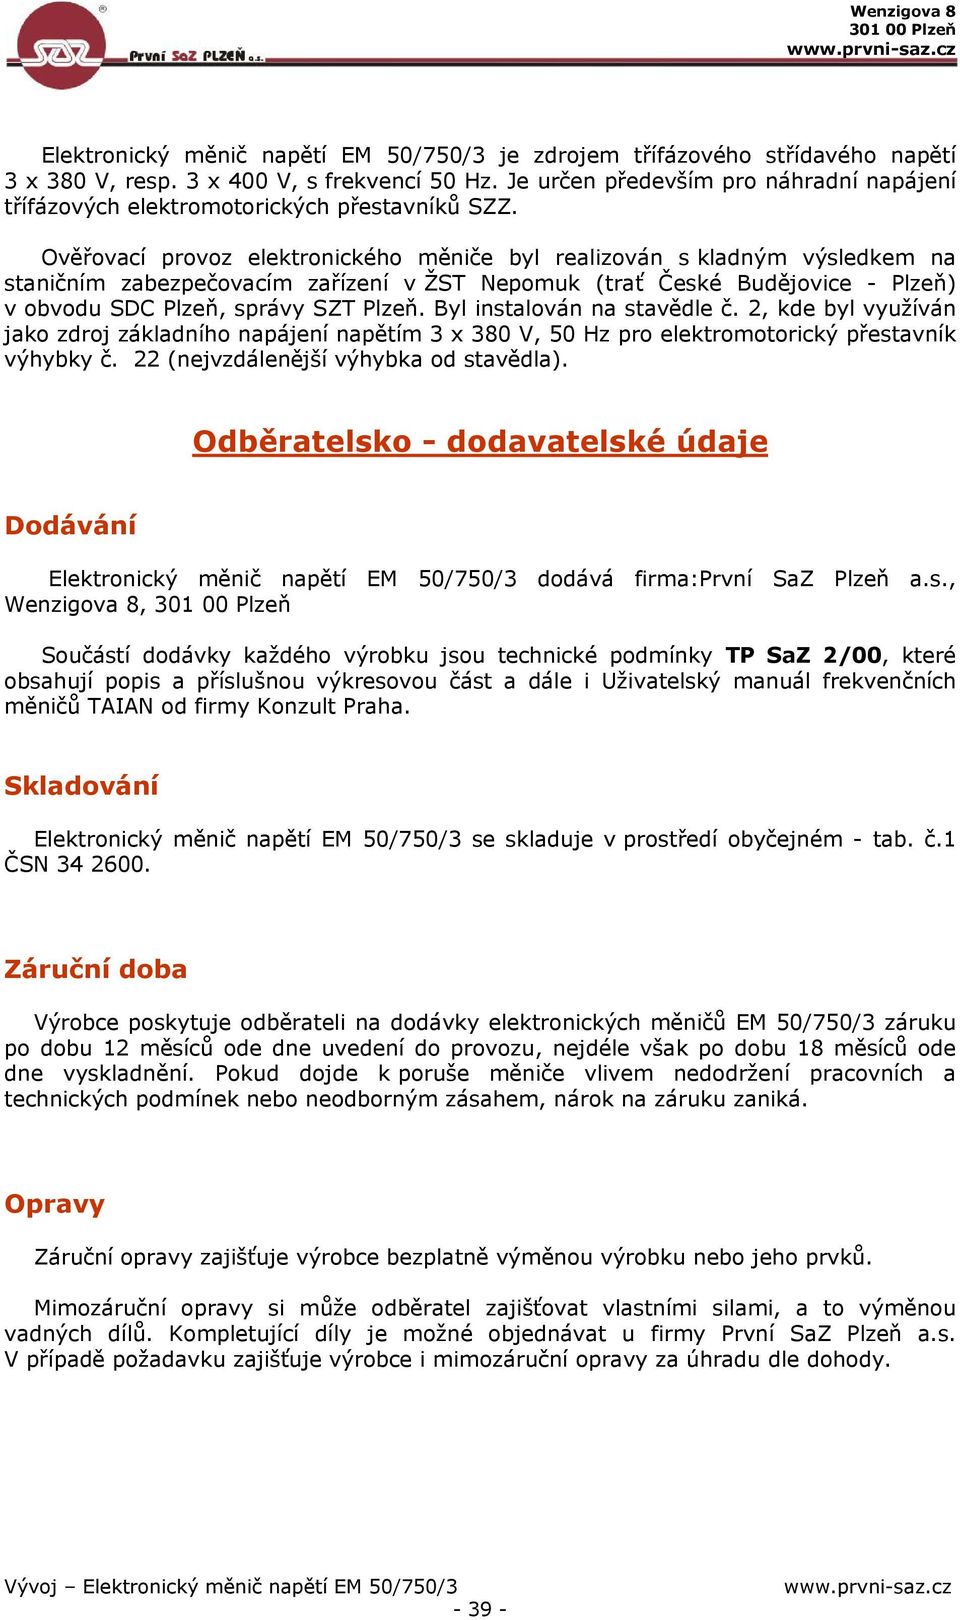 Ověřovací provoz elektronického měniče byl realizován s kladným výsledkem na staničním zabezpečovacím zařízení v ŽST Nepomuk (trať České Budějovice - Plzeň) v obvodu SDC Plzeň, správy SZT Plzeň.